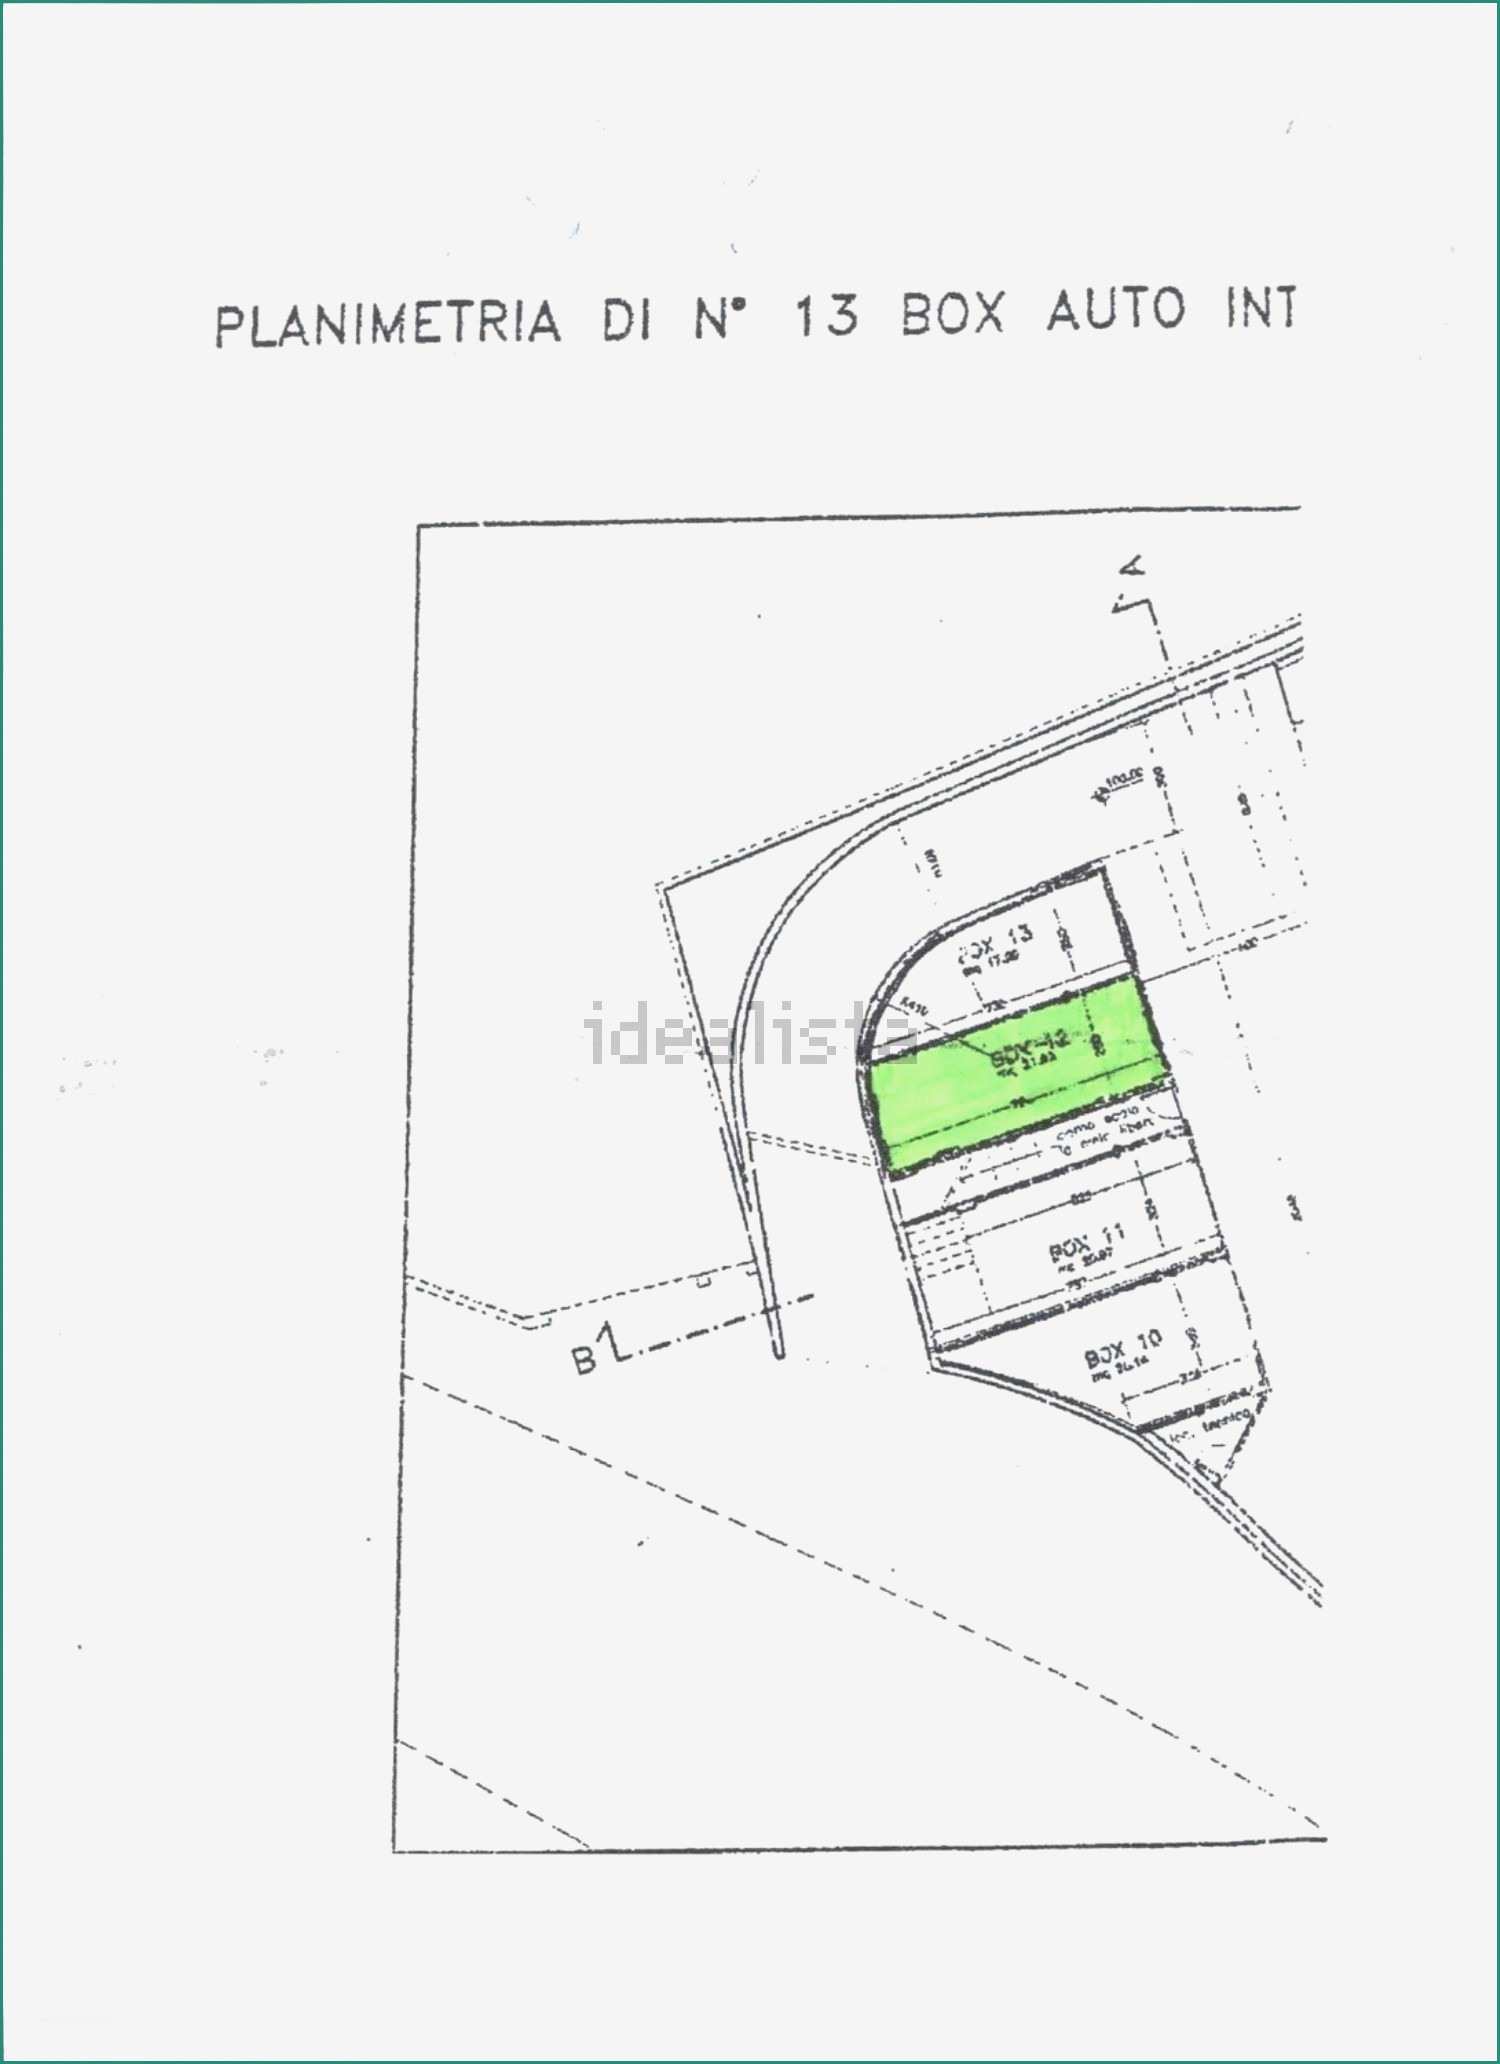 Coperture Coibentate Prezzi E Bello Box Auto Prezzi Casa Design Idee Su Arredamento